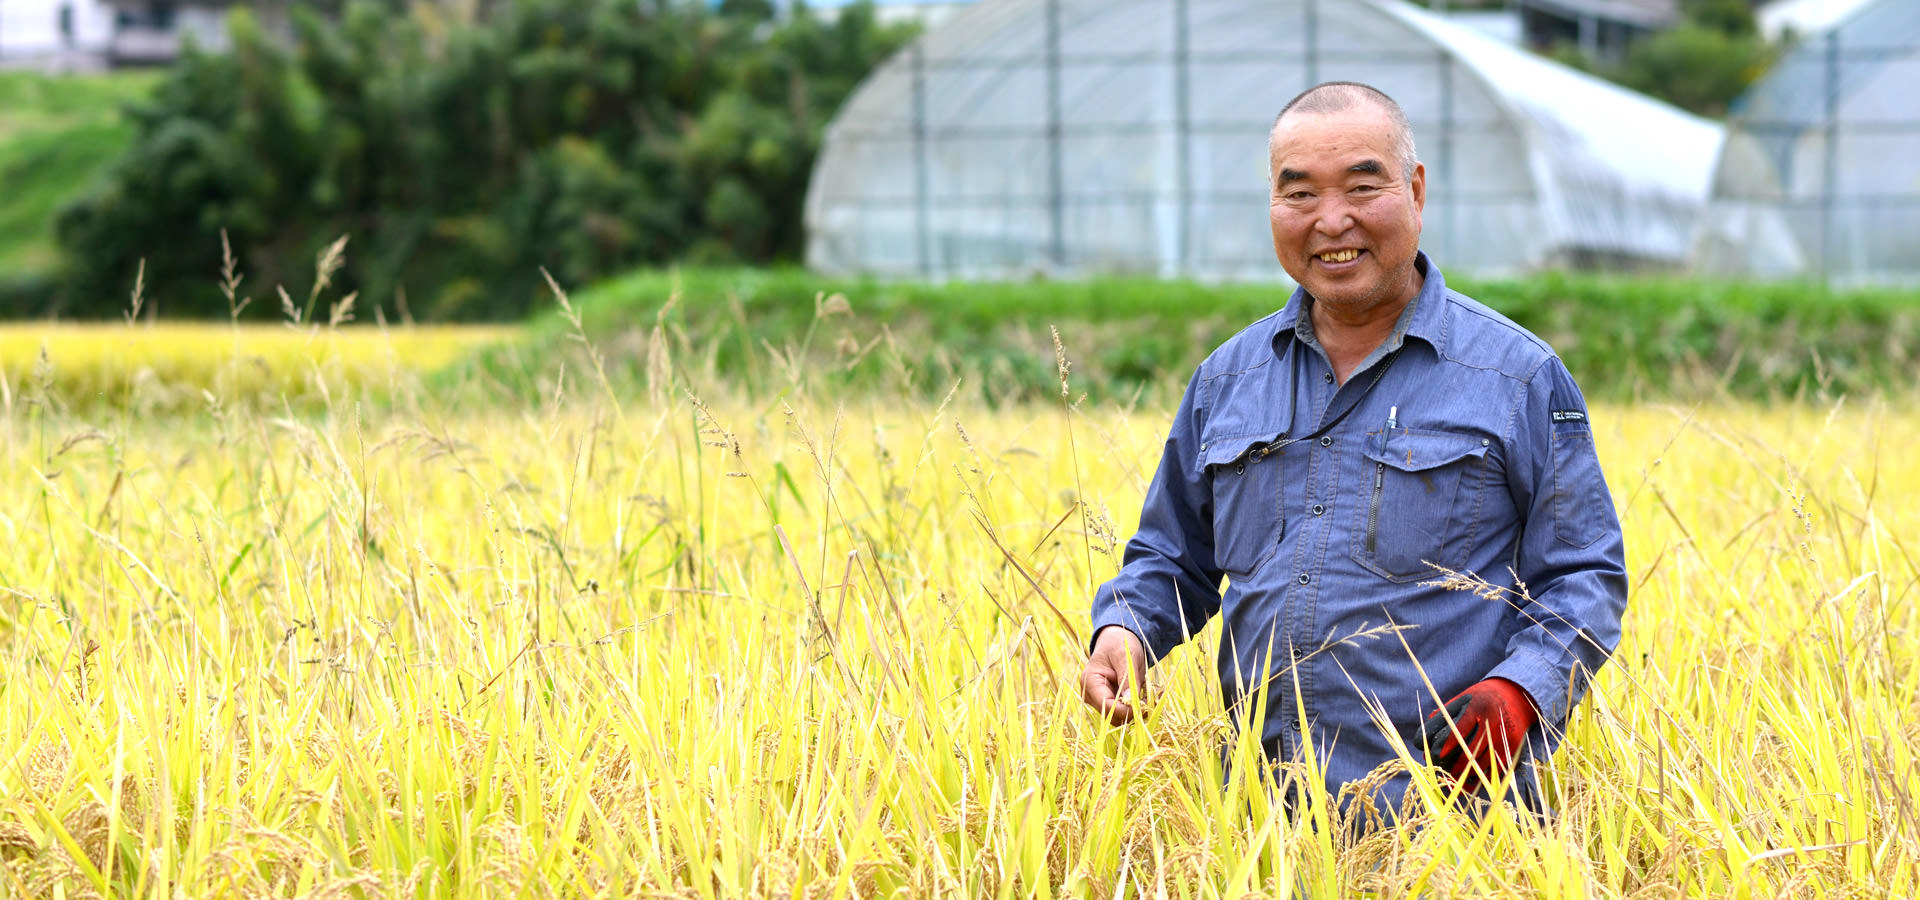 平成29年度、熊本南阿蘇産。北野悦之さんが作る、無農薬・無施肥栽培のお米。